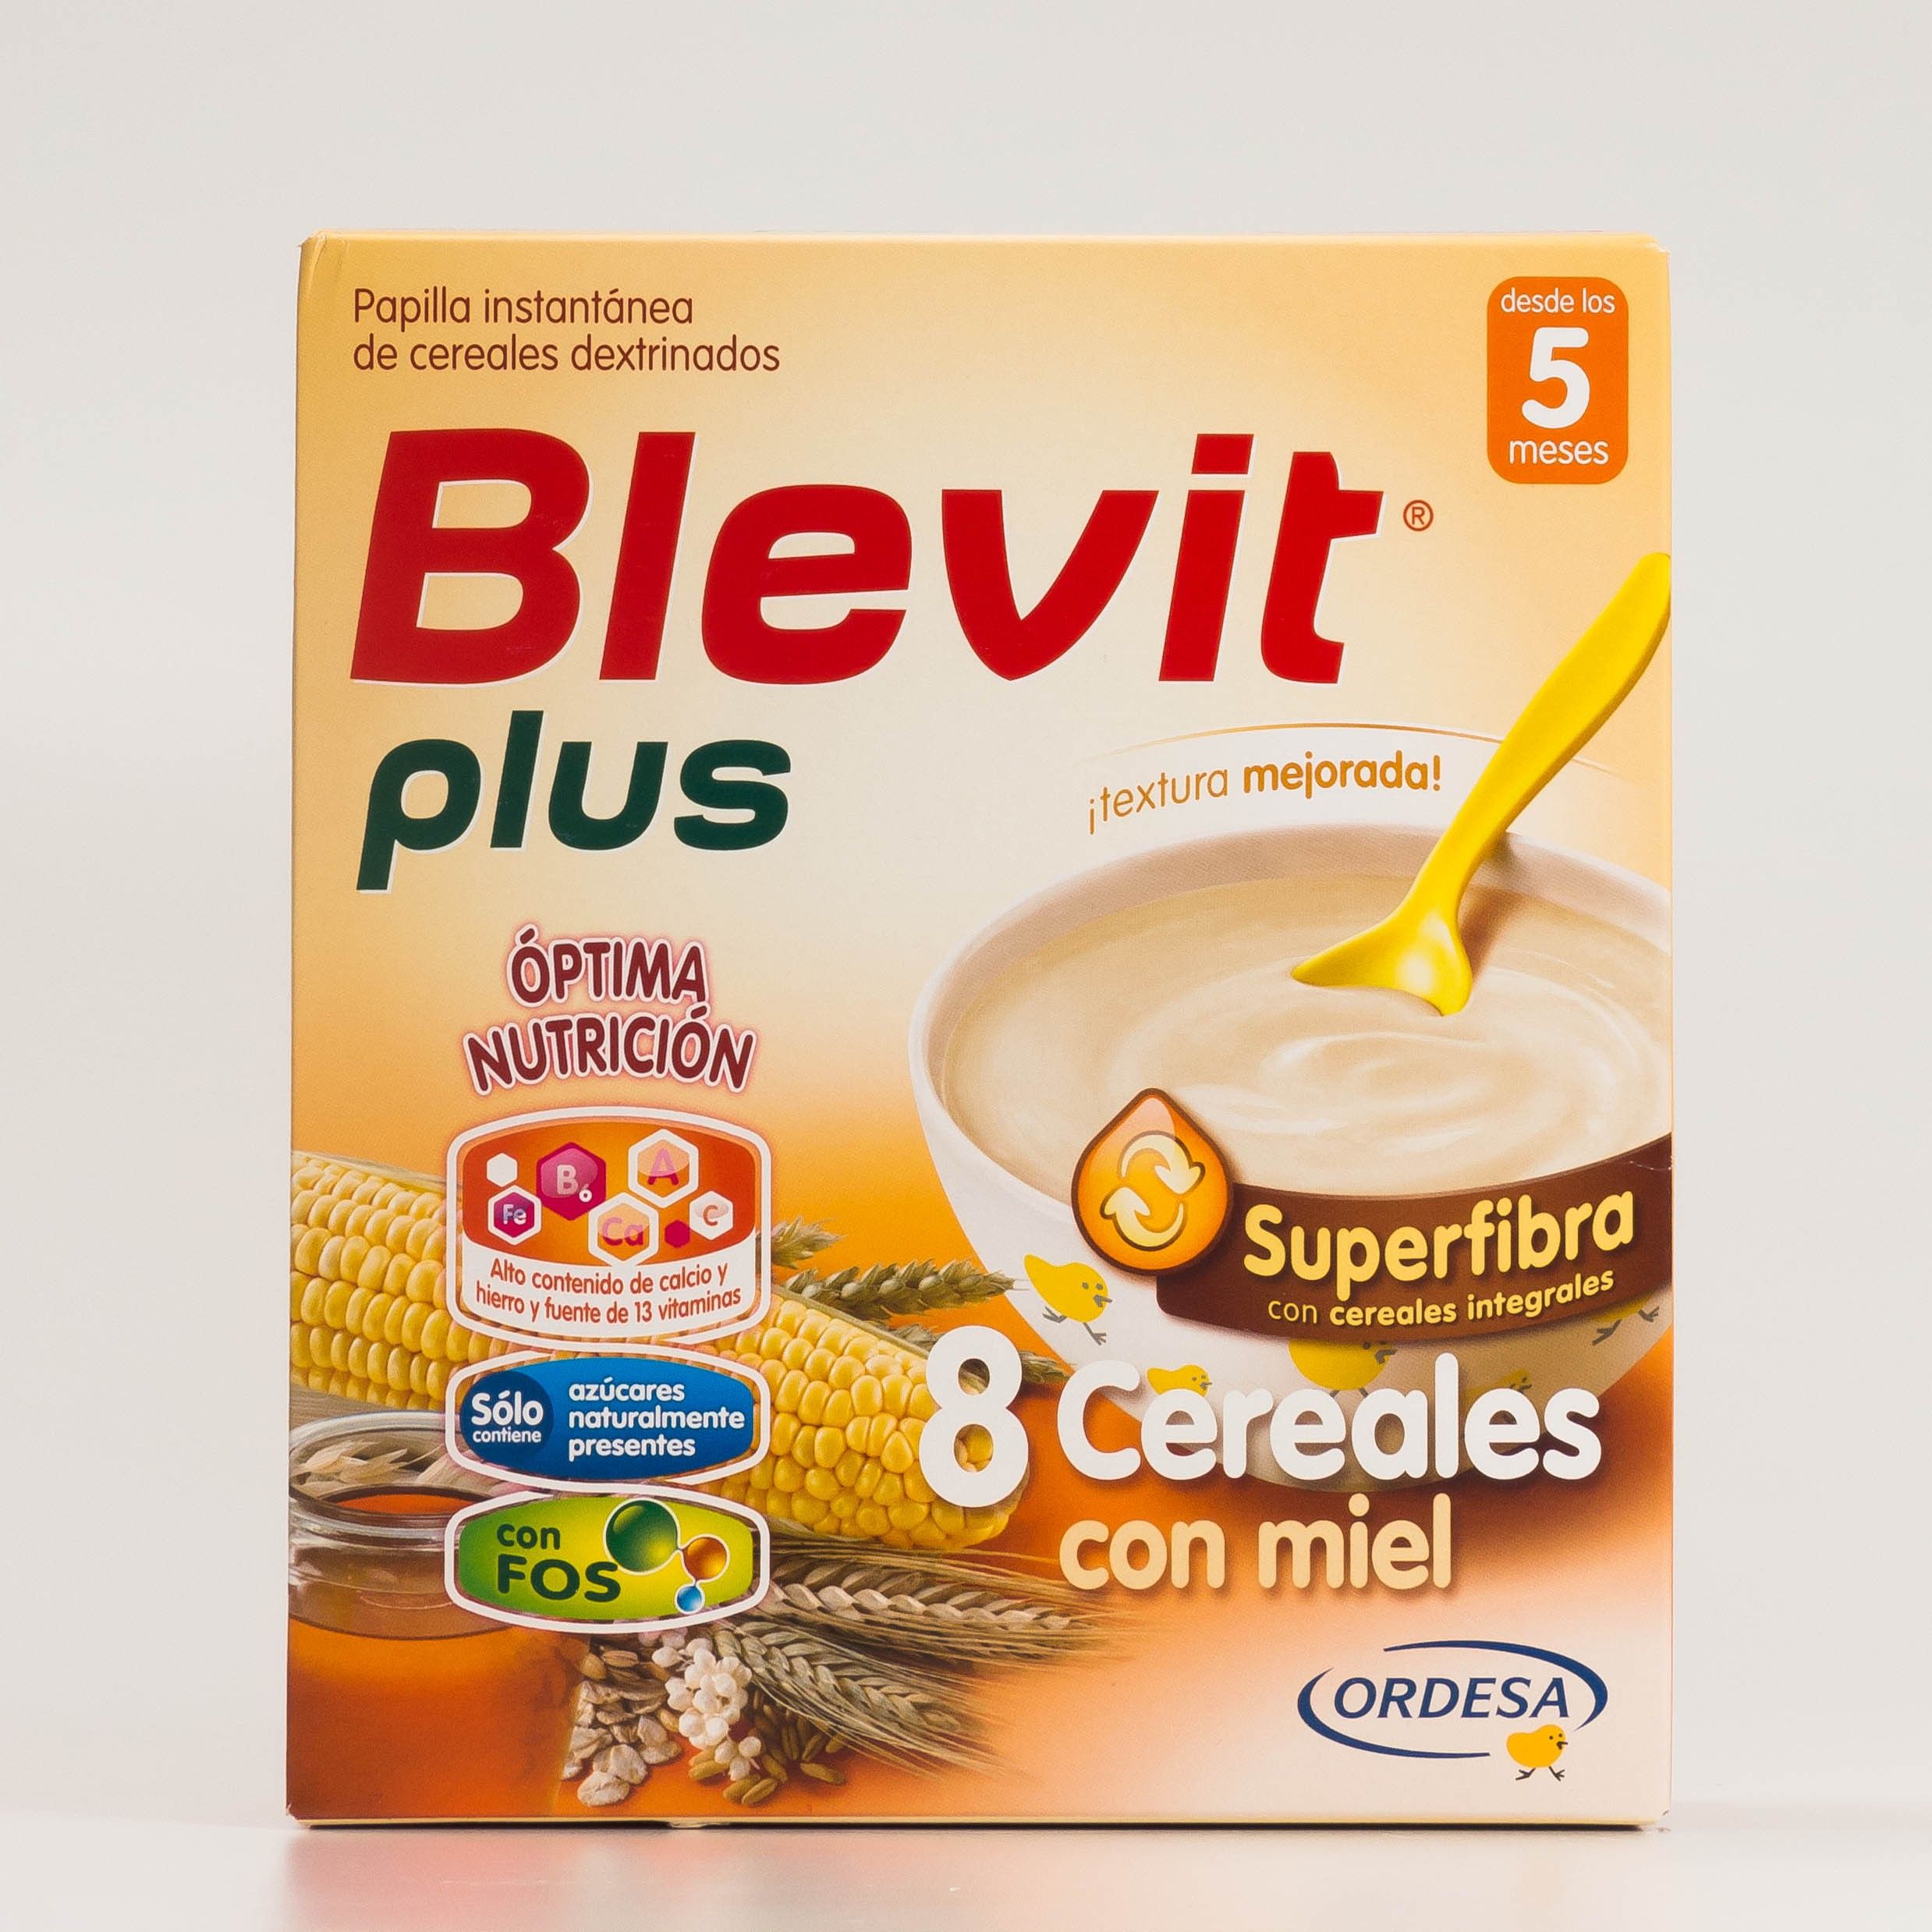 Blevit Plus Superfibra 8 cereales con Miel, 600 g.